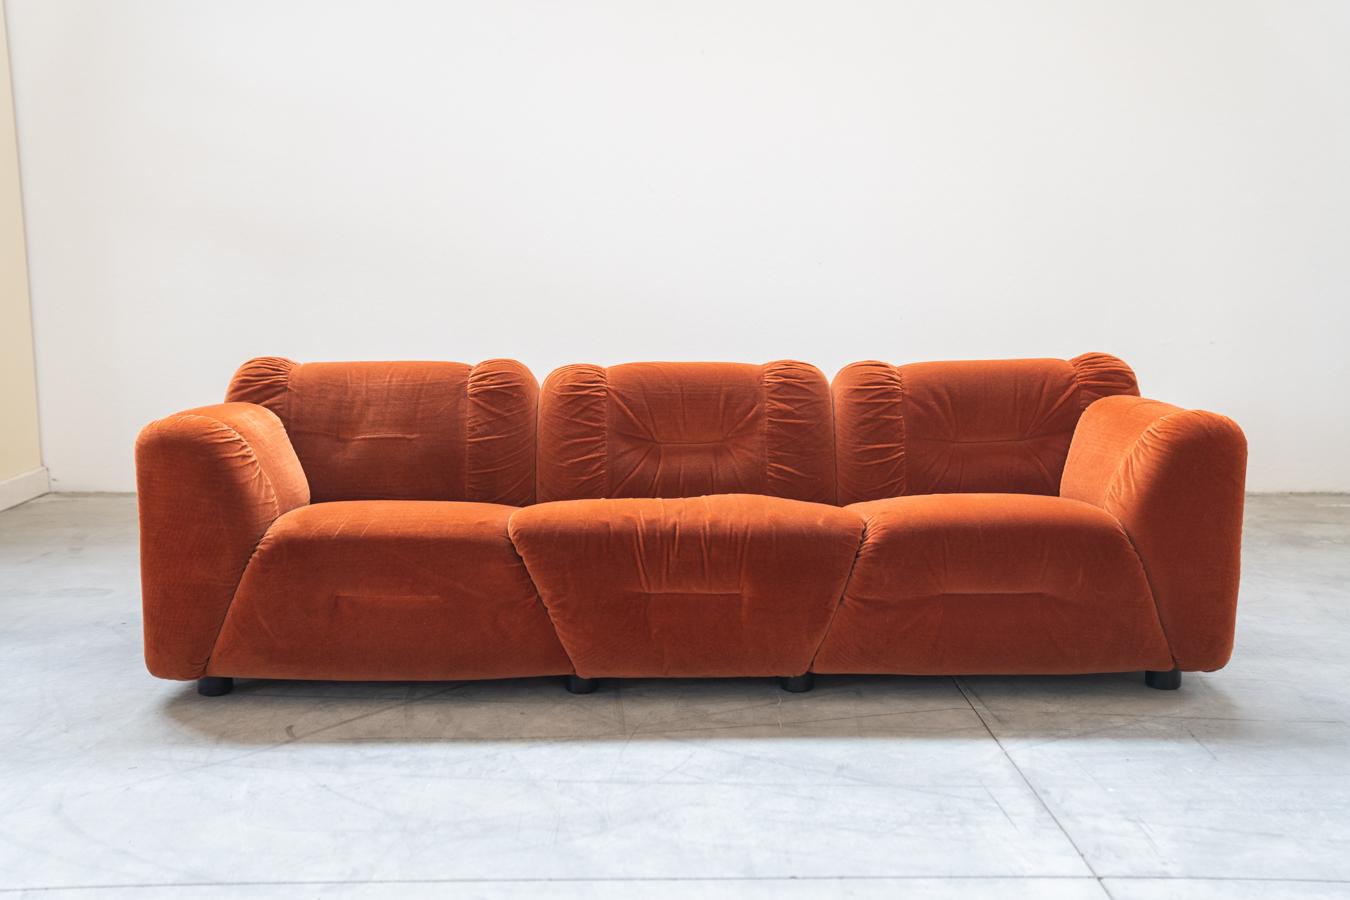 Orangefarbene Chenille-Sofas, zwei- und dreisitzig, 2er-Set, 1970er Jahre
Rahmen aus Holz, Füße aus Kunststoff. Die Rückenlehnen der beiden Sofas  	weist leichte zeitbedingte Gebrauchsspuren auf.
MASSNAHMEN	3-Sitzer Sofa: H65 x B230 x T90 - Sitzhöhe